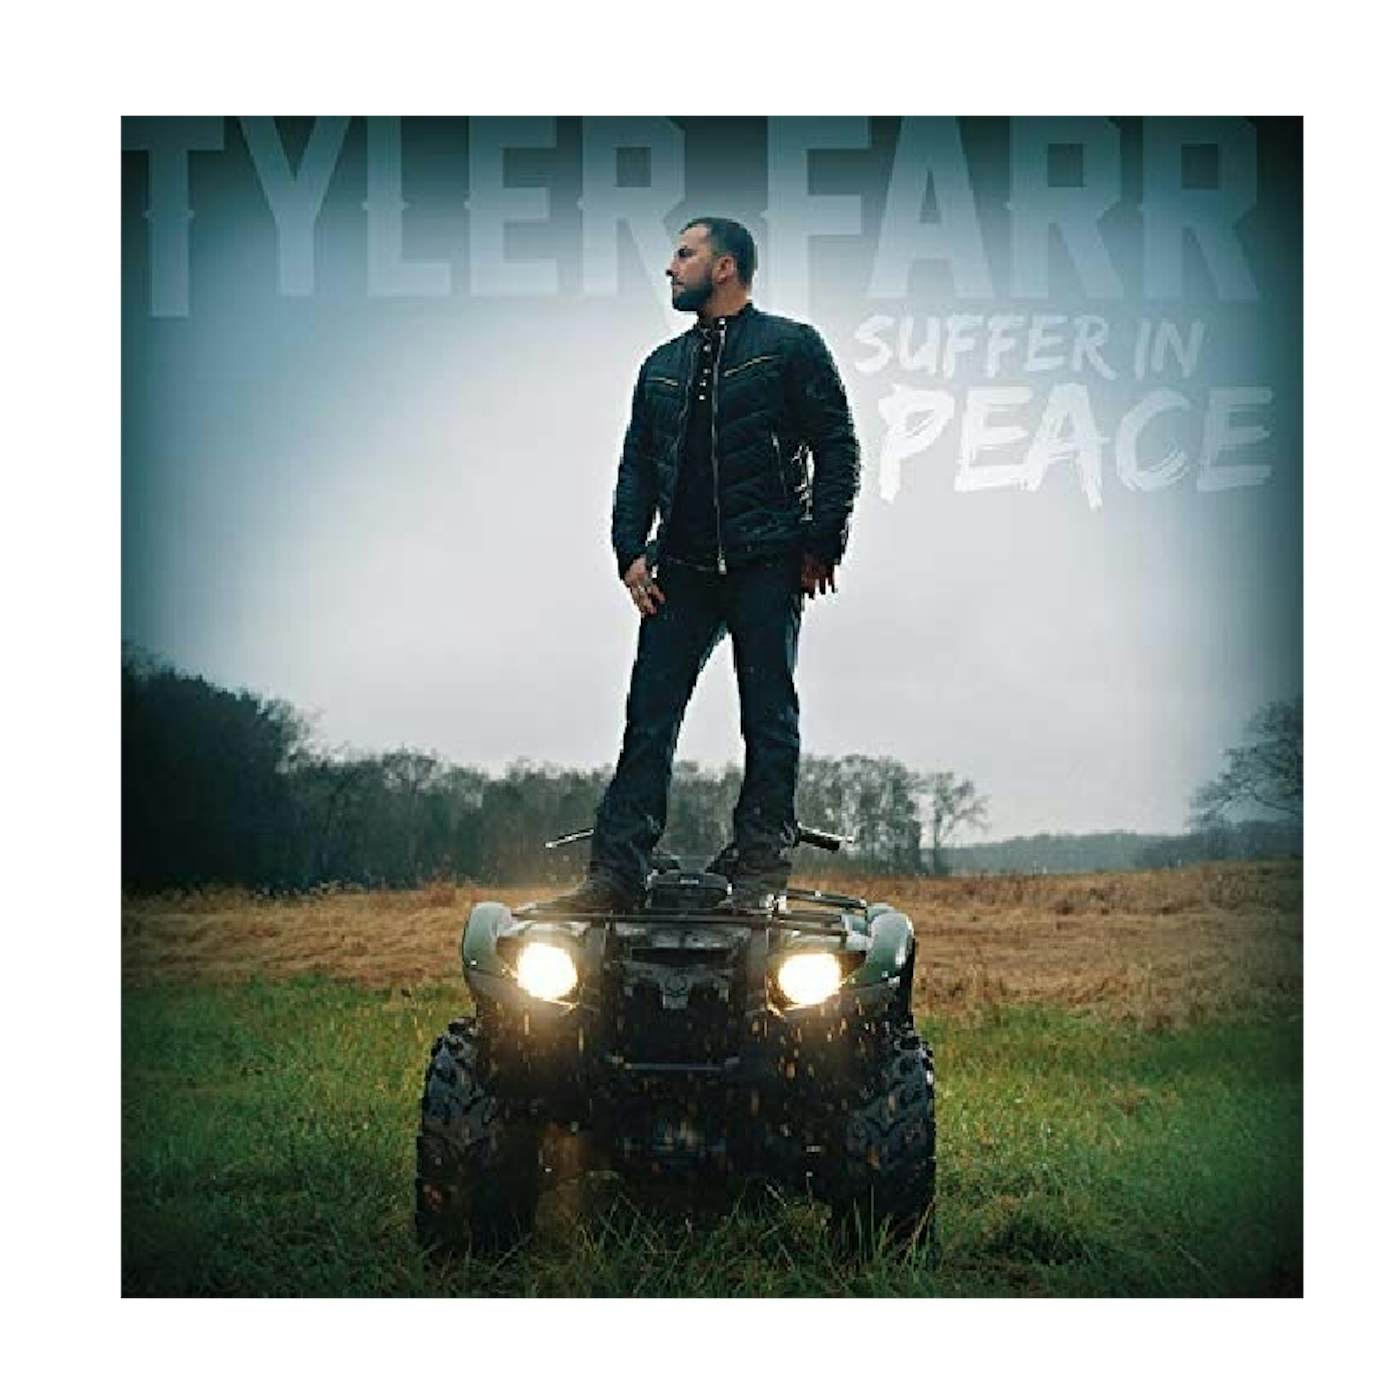 Tyler Farr CD- Suffer In Peace